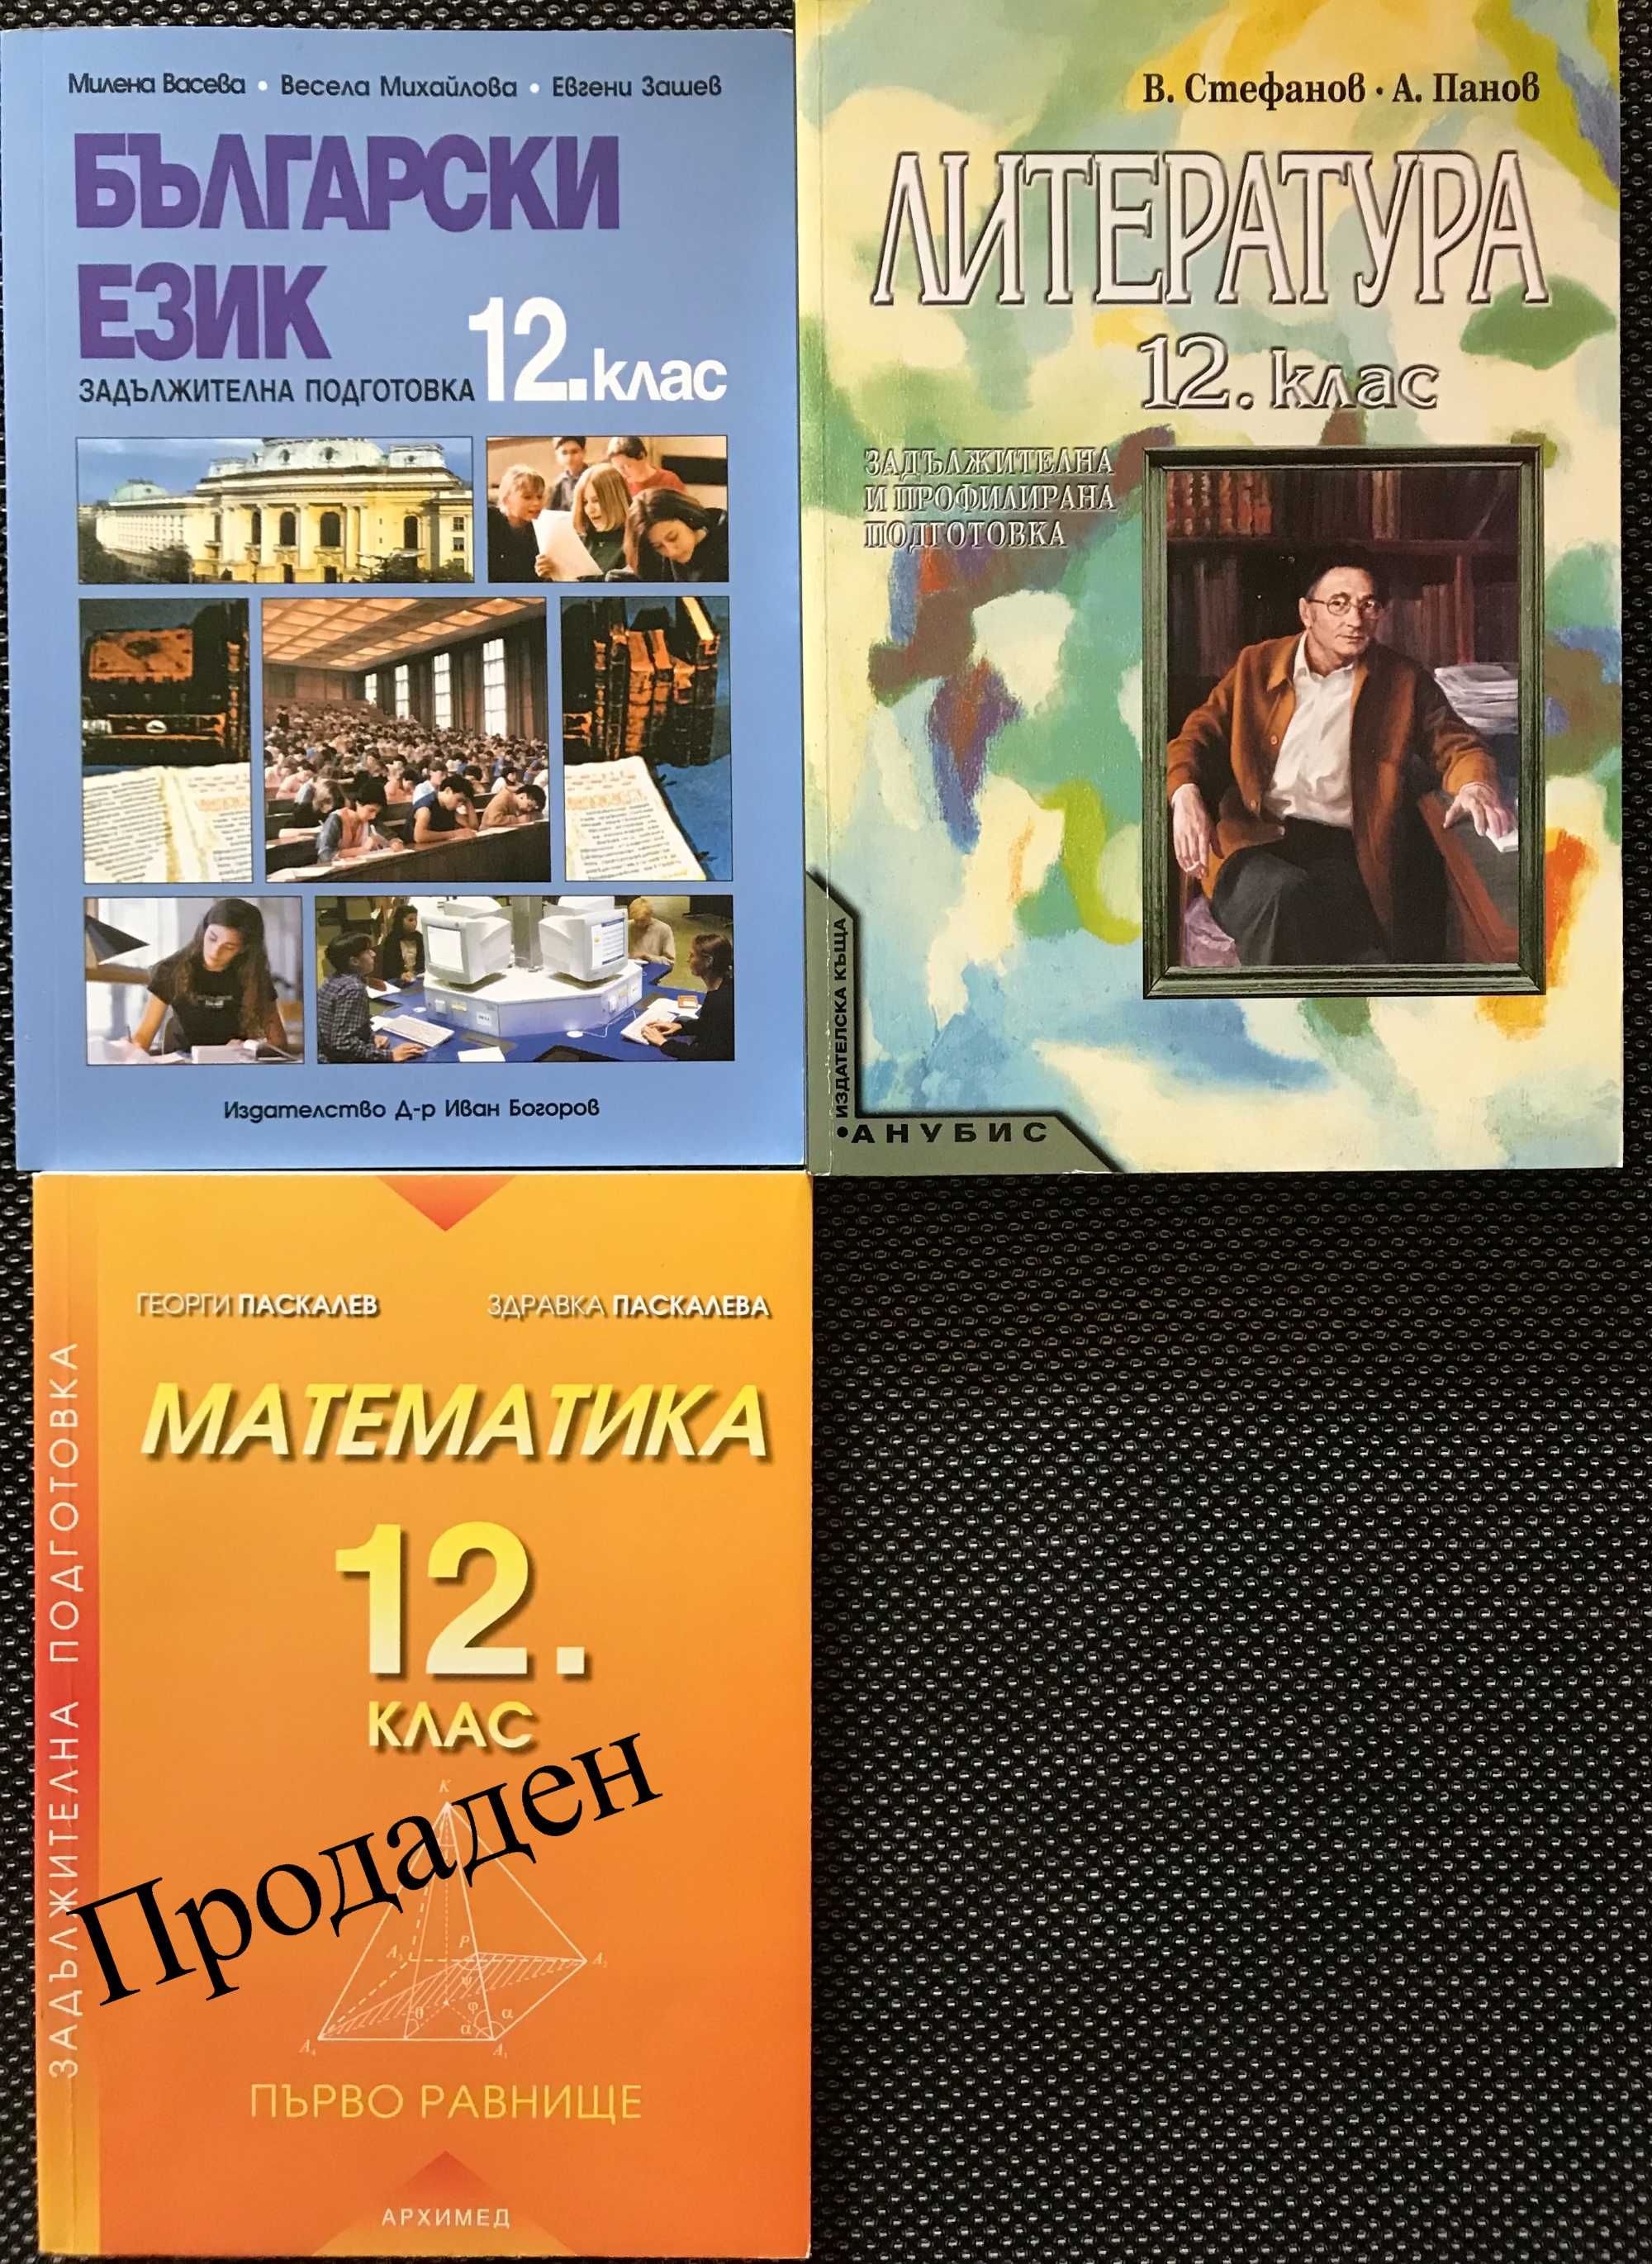 Учебници 8, 9, 10, 11 и 12 клас. Липсващите в текста са продадени